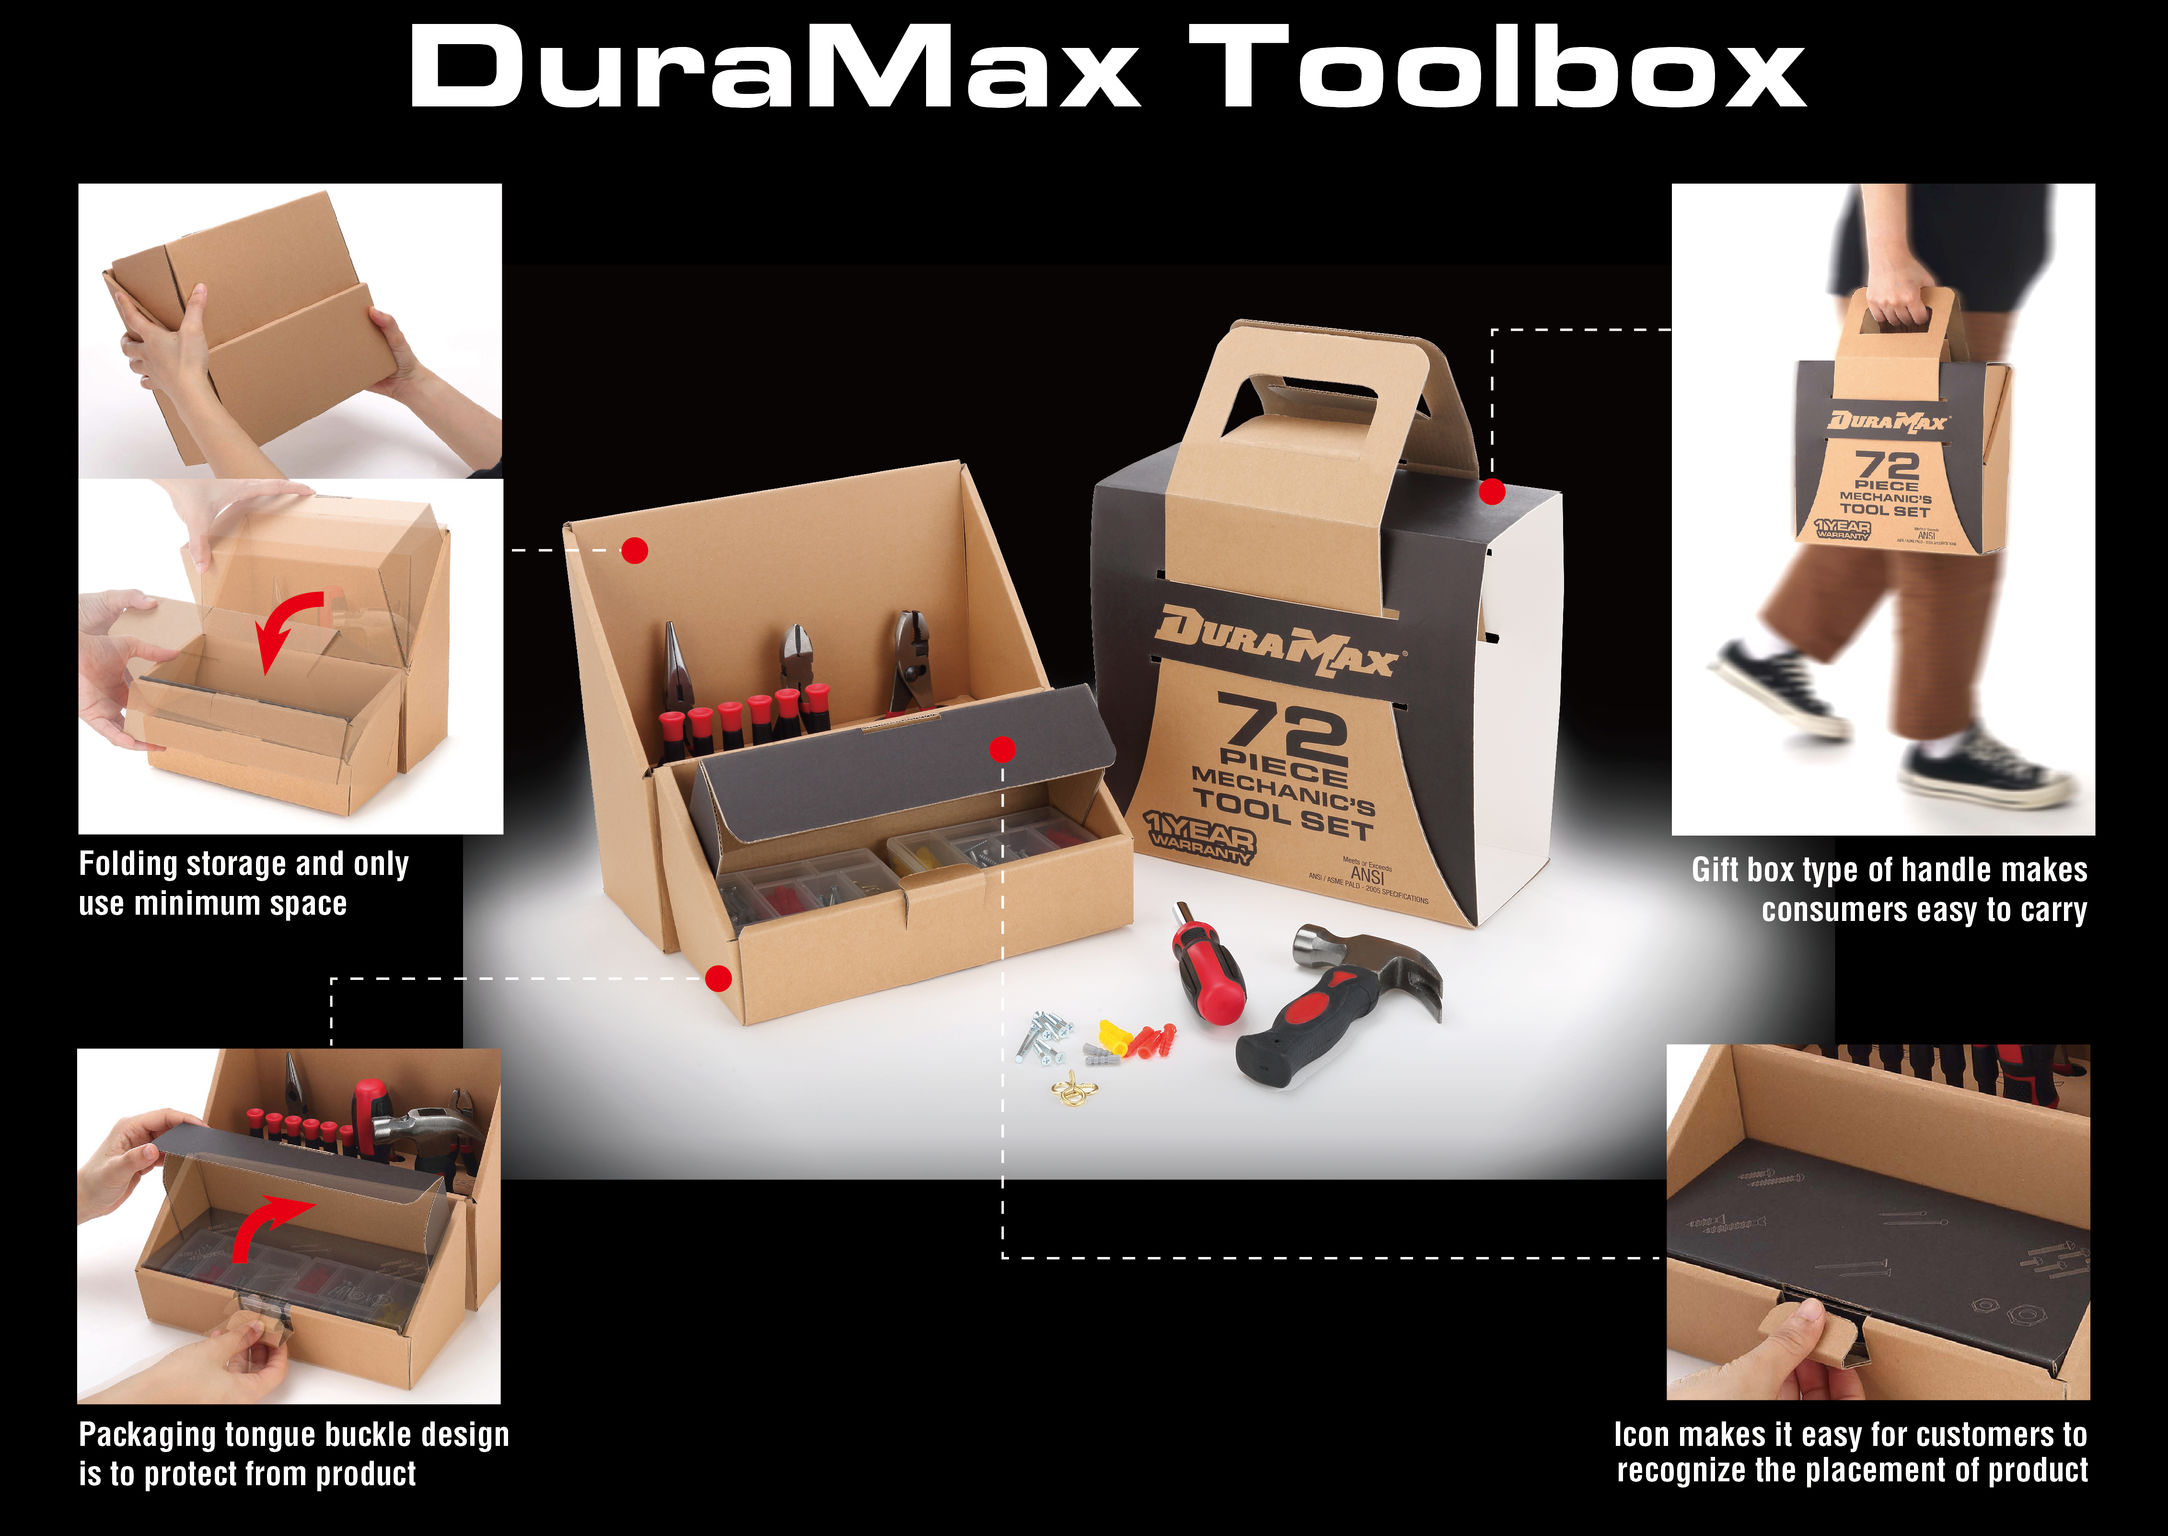 DuraMax Toolbox